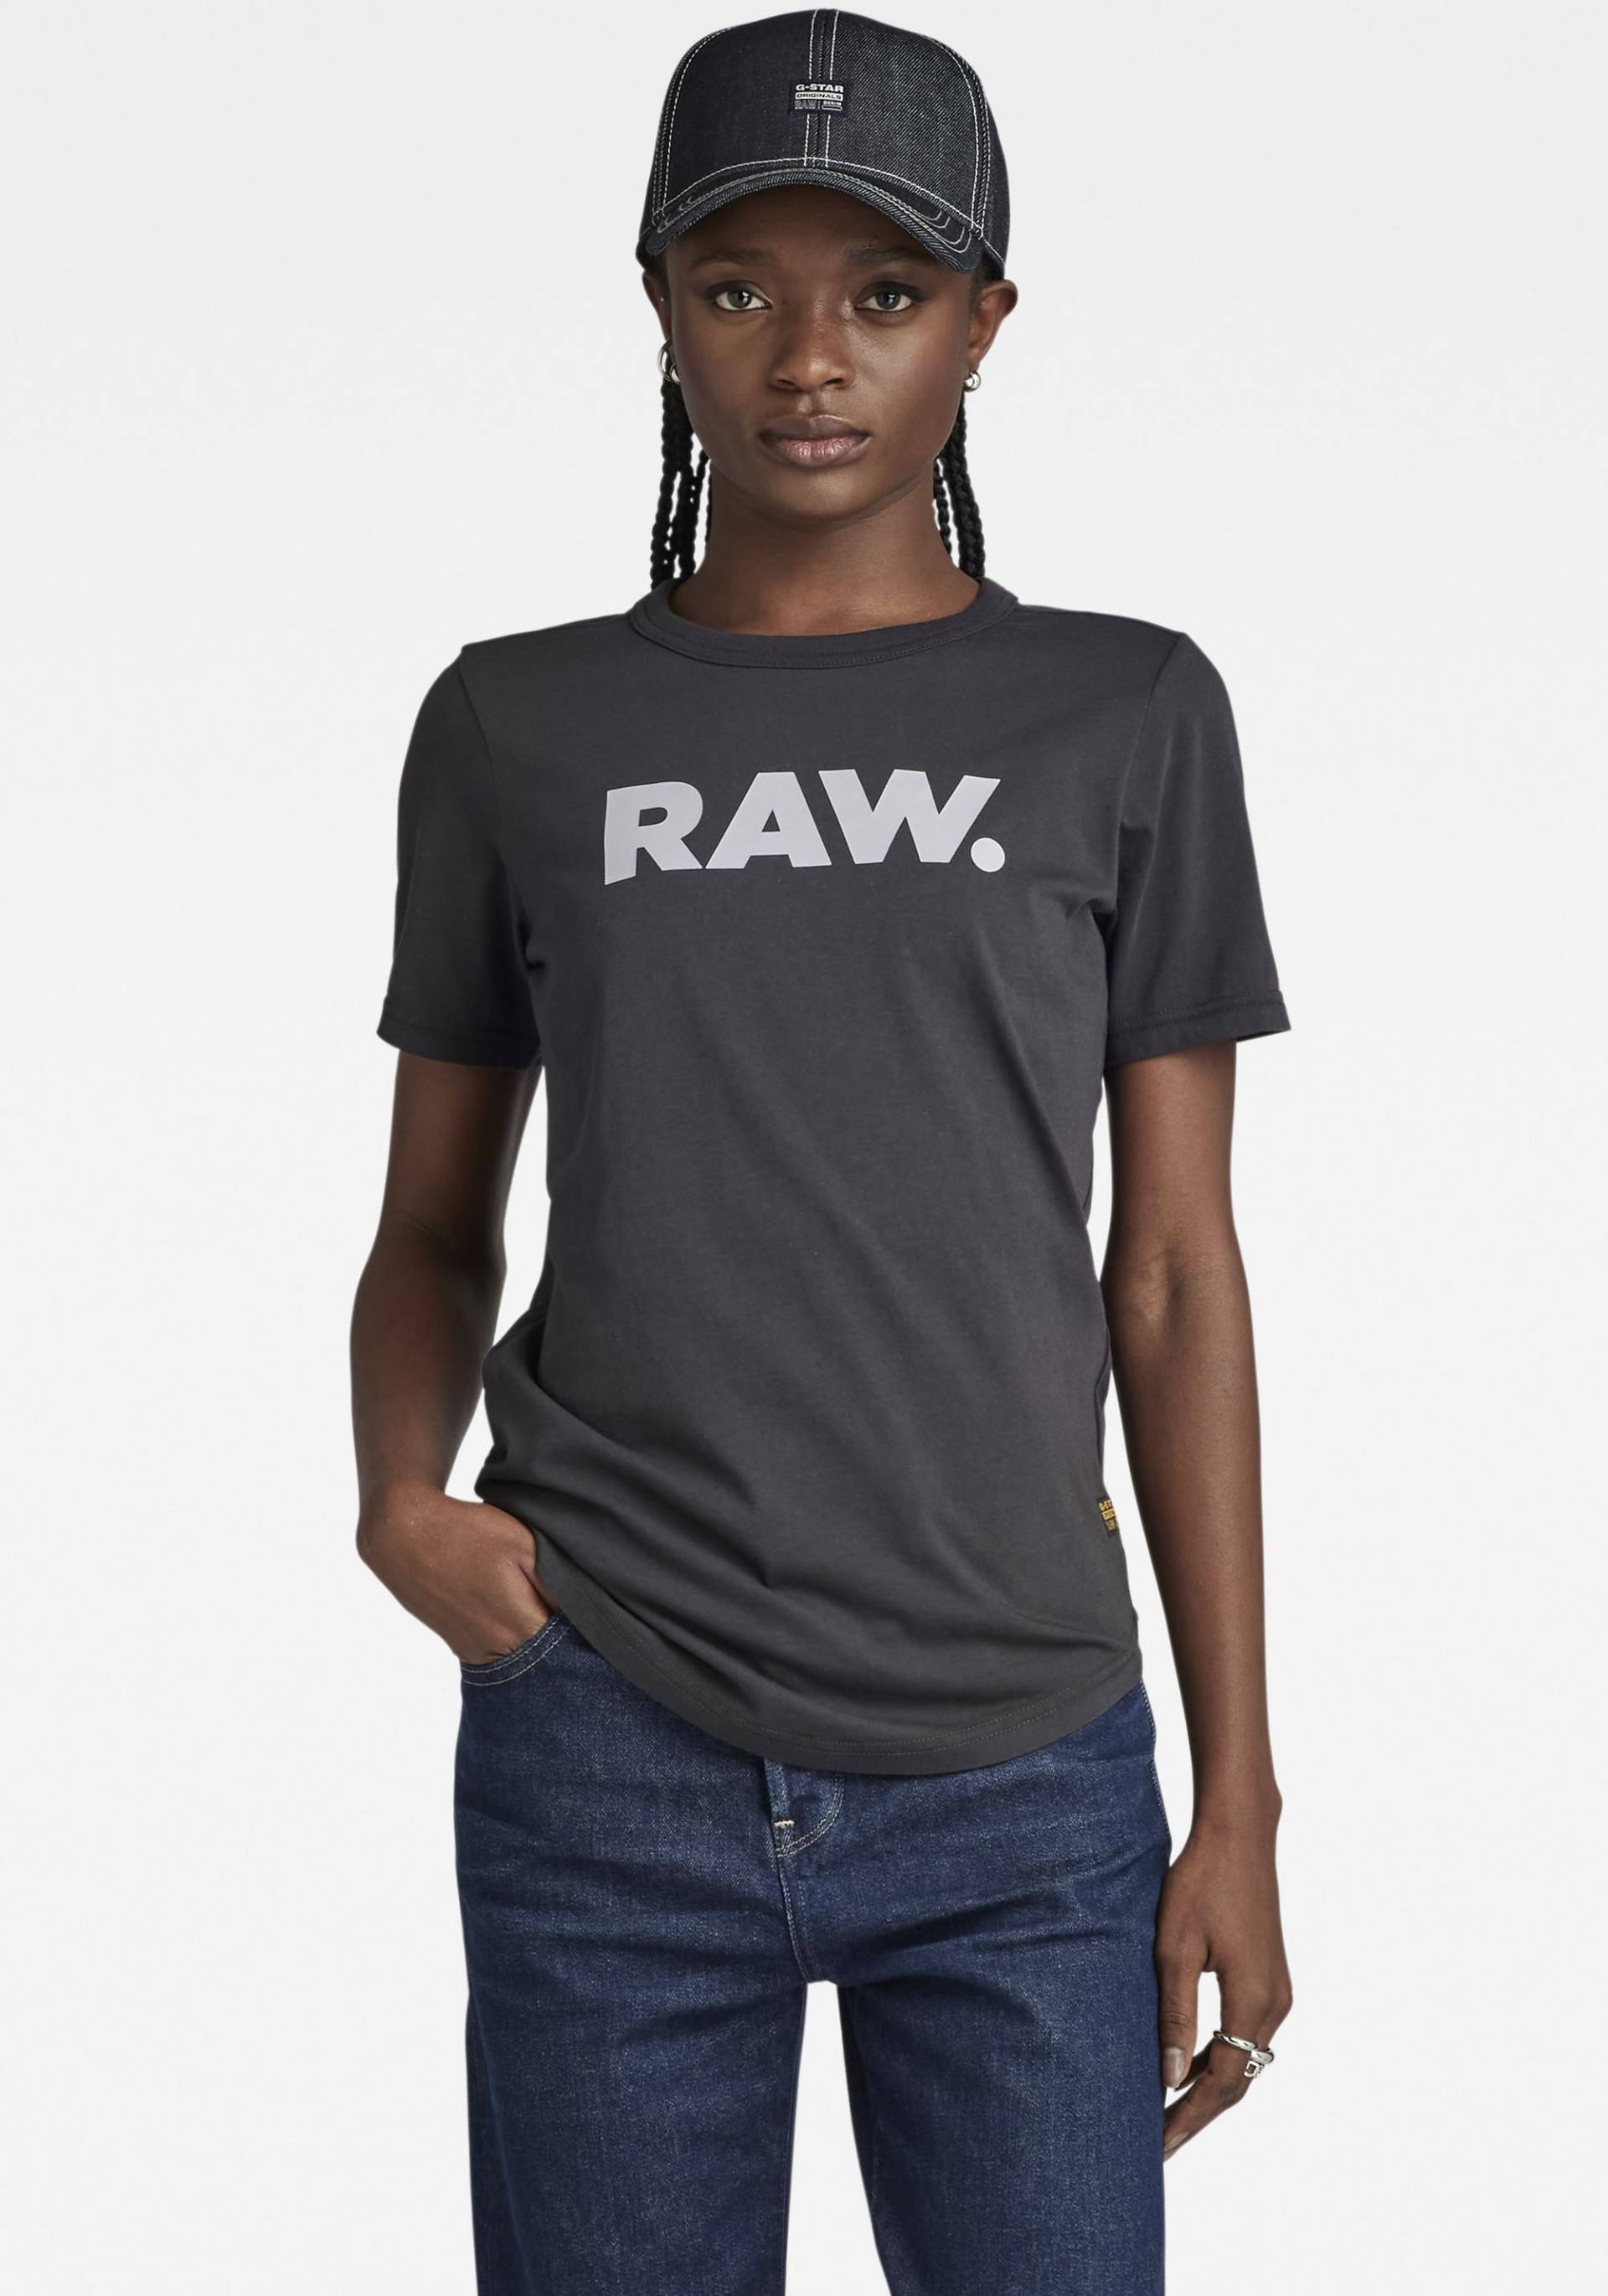 G-Star RAW T-Shirt »RAW. slim r t wmn« von G-Star Raw